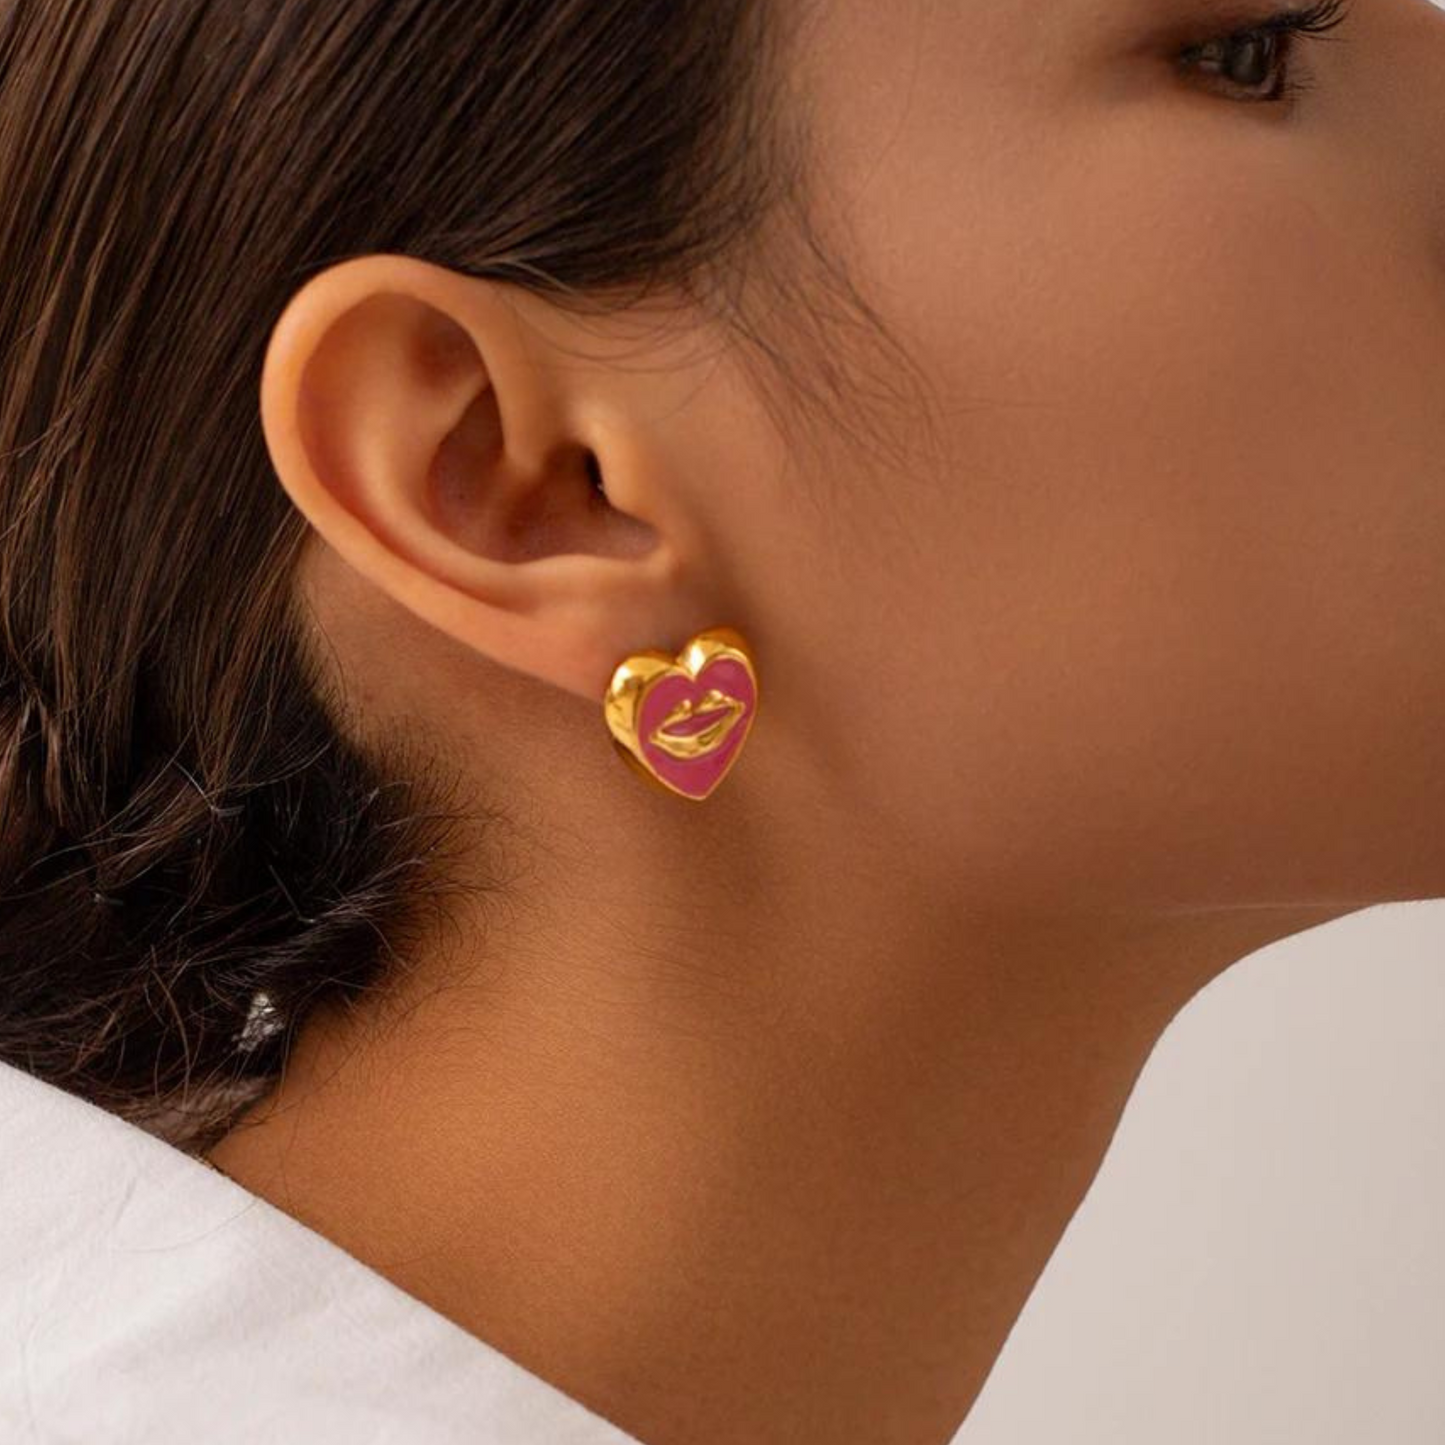 Pink Pucker up earrings